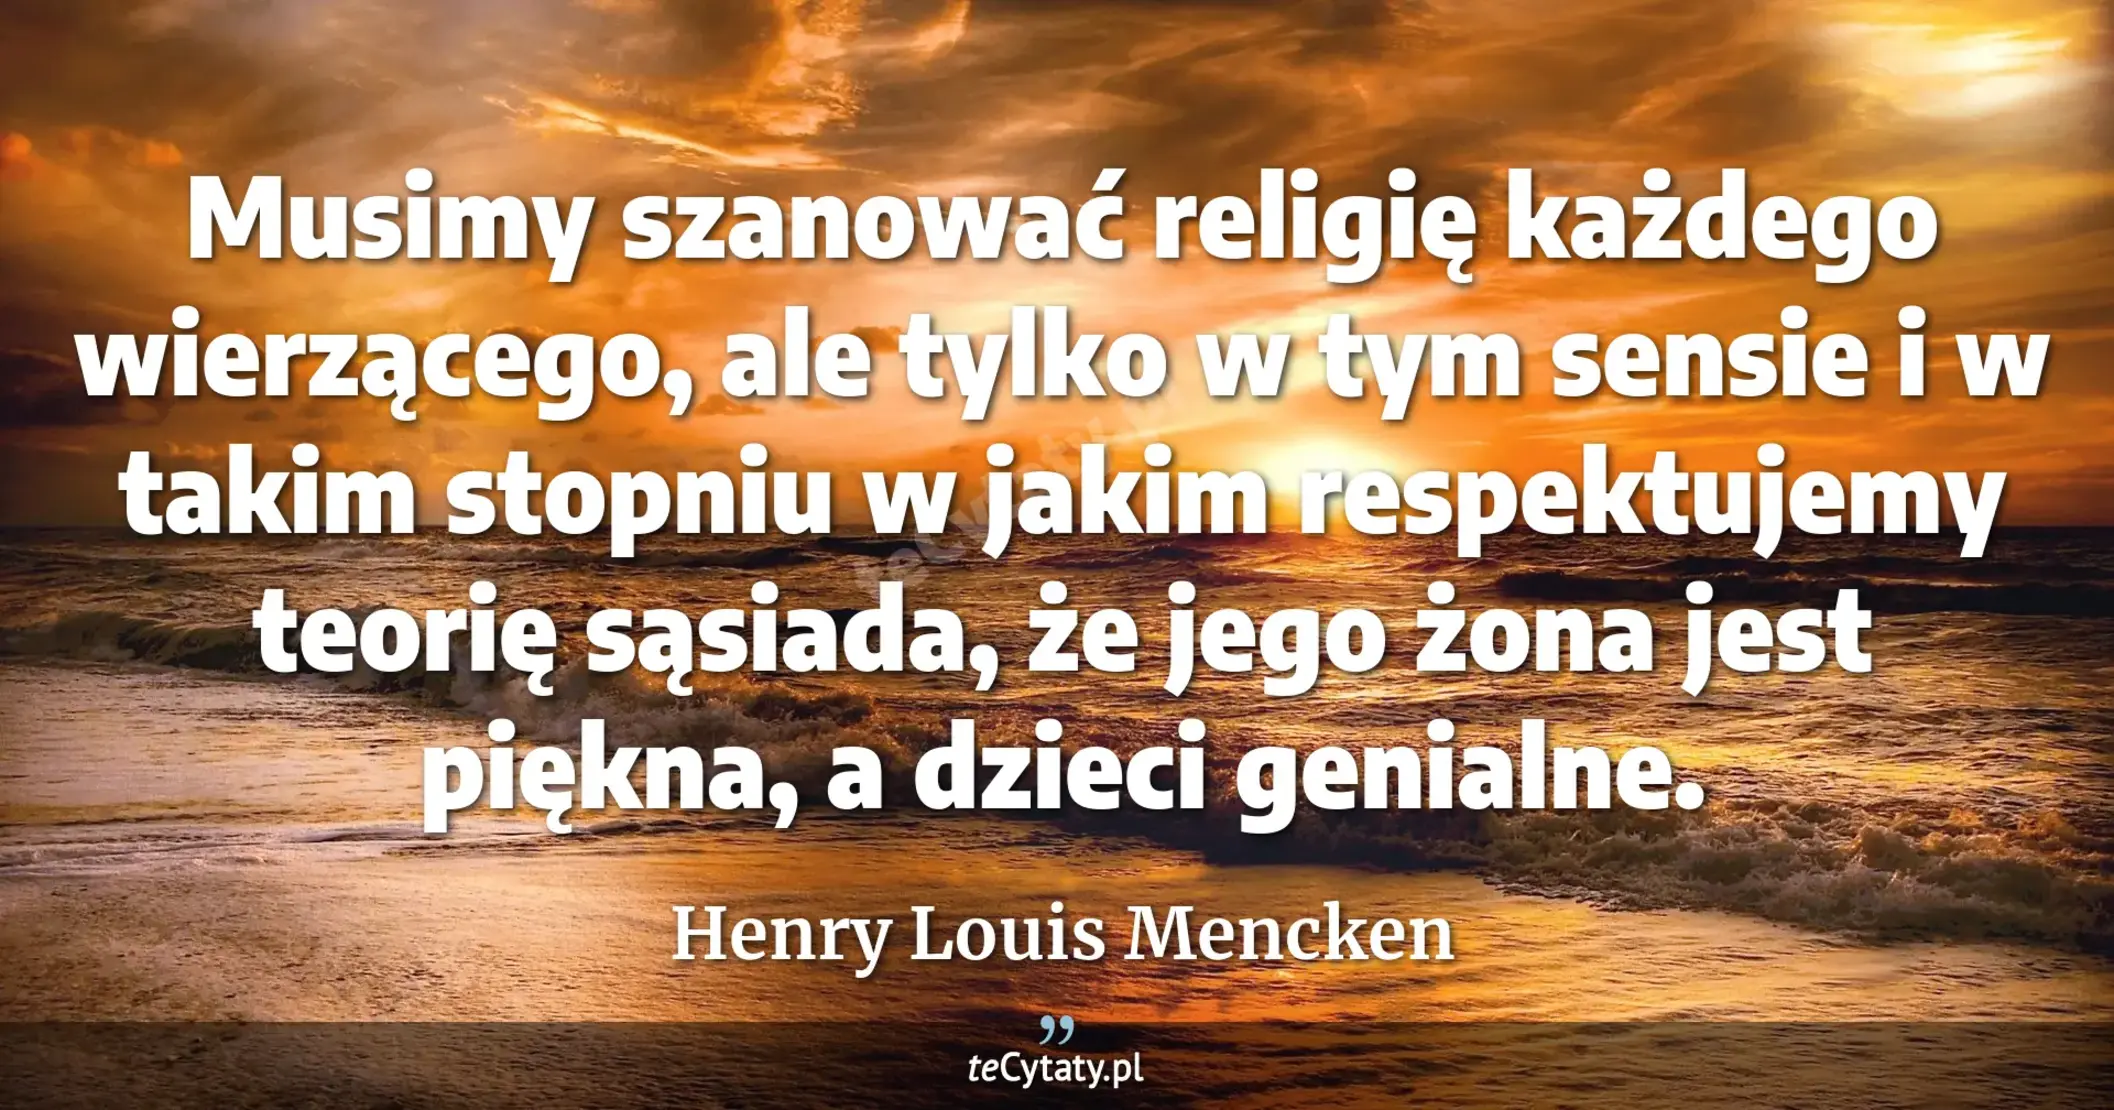 Musimy szanować religię każdego wierzącego, ale tylko w tym sensie i w takim stopniu w jakim respektujemy teorię sąsiada, że jego żona jest piękna, a dzieci genialne. - Henry Louis Mencken